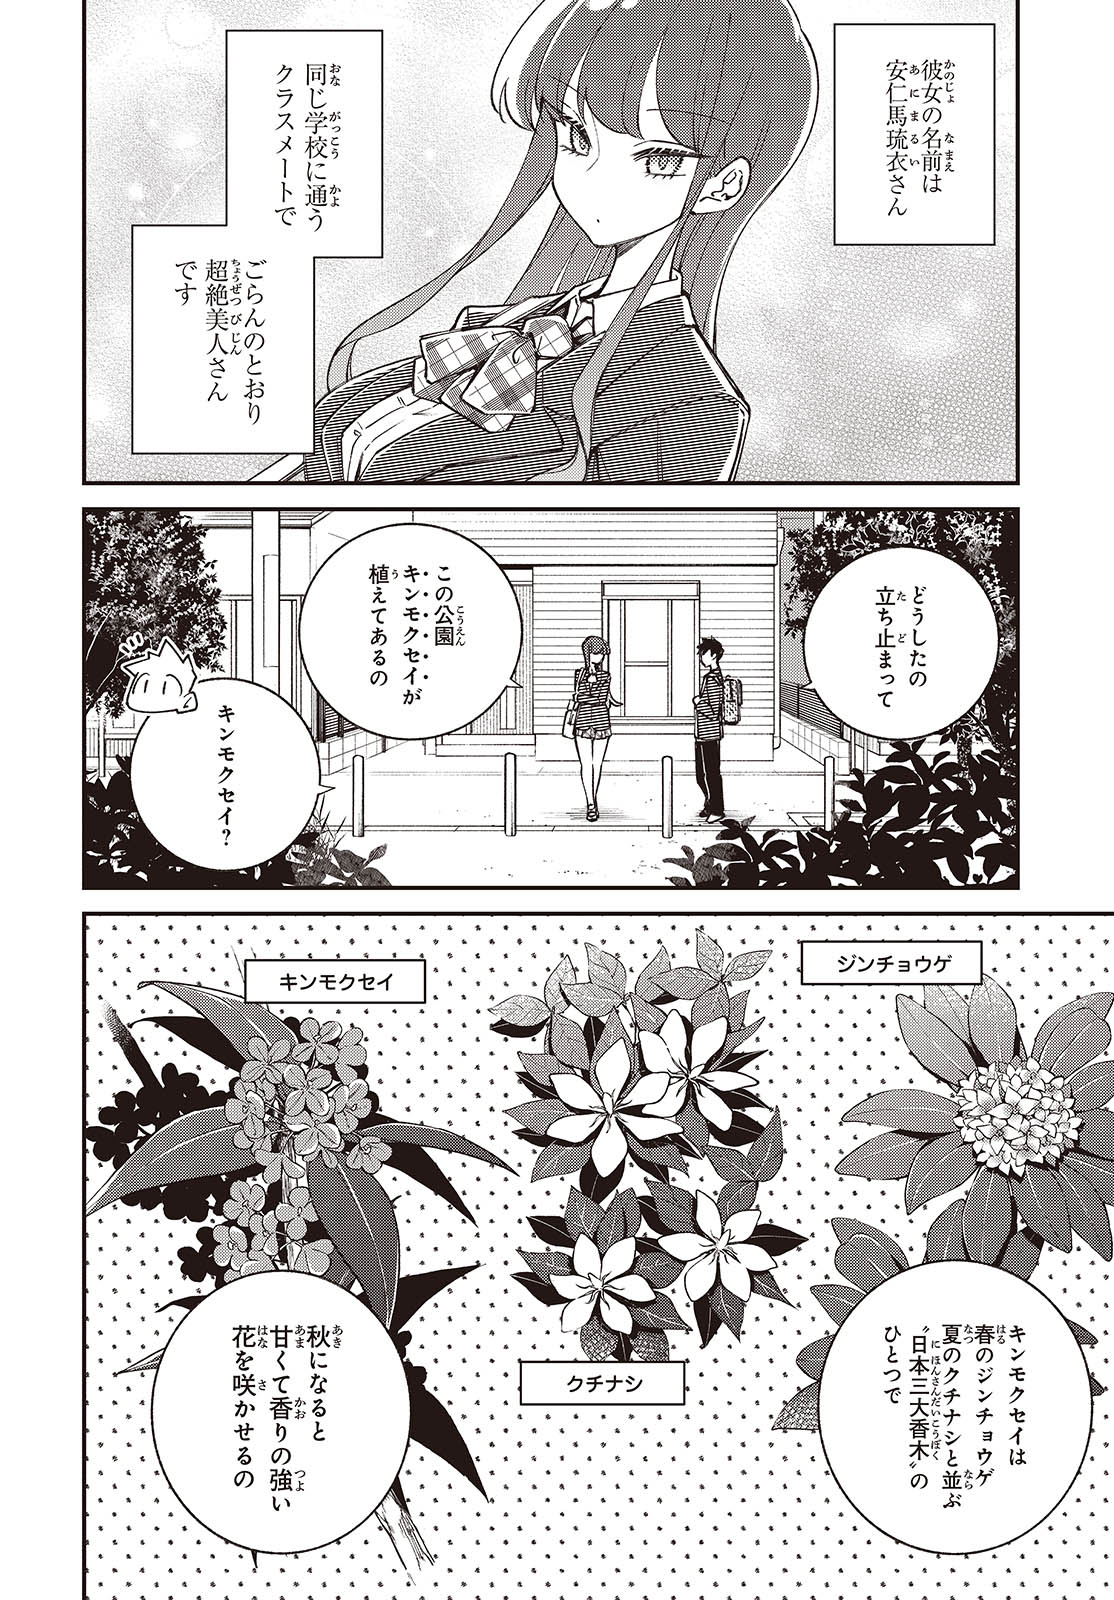 Ikimono-suki no Anima-san ni wa Honno Choppiri Doku ga aru - Chapter 11 - Page 2